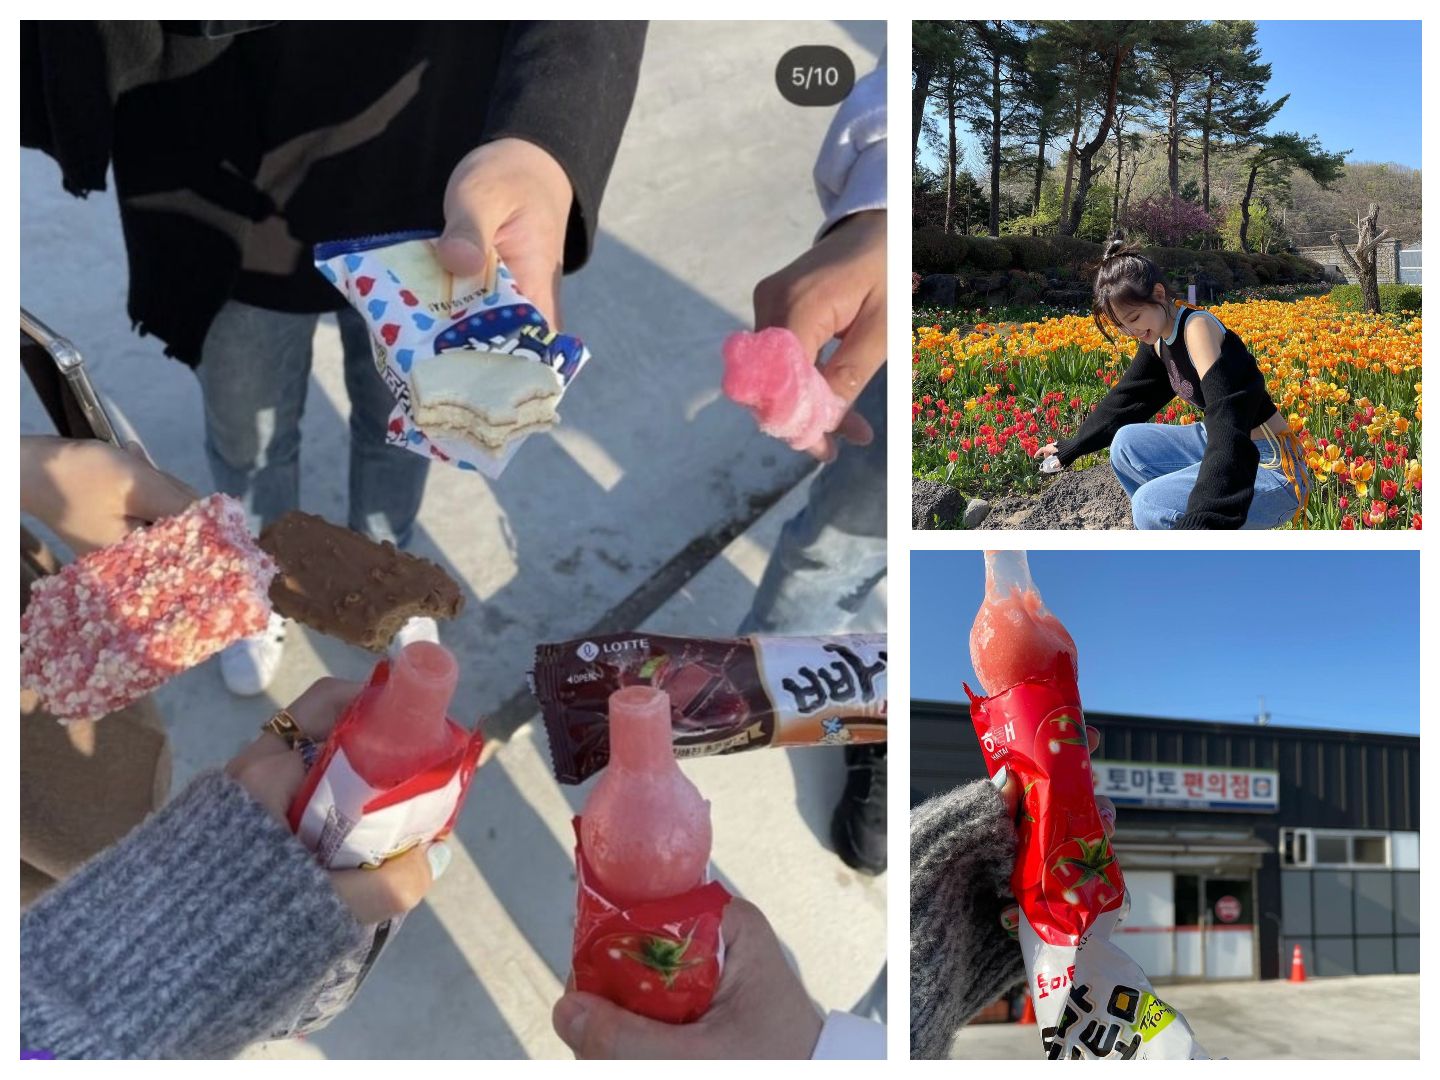 Foto 7 tangan orang yang berbeda memegang es krim dan Jennie sempat terlihat tidak memakai masker menjadi pemicu kontroversi.